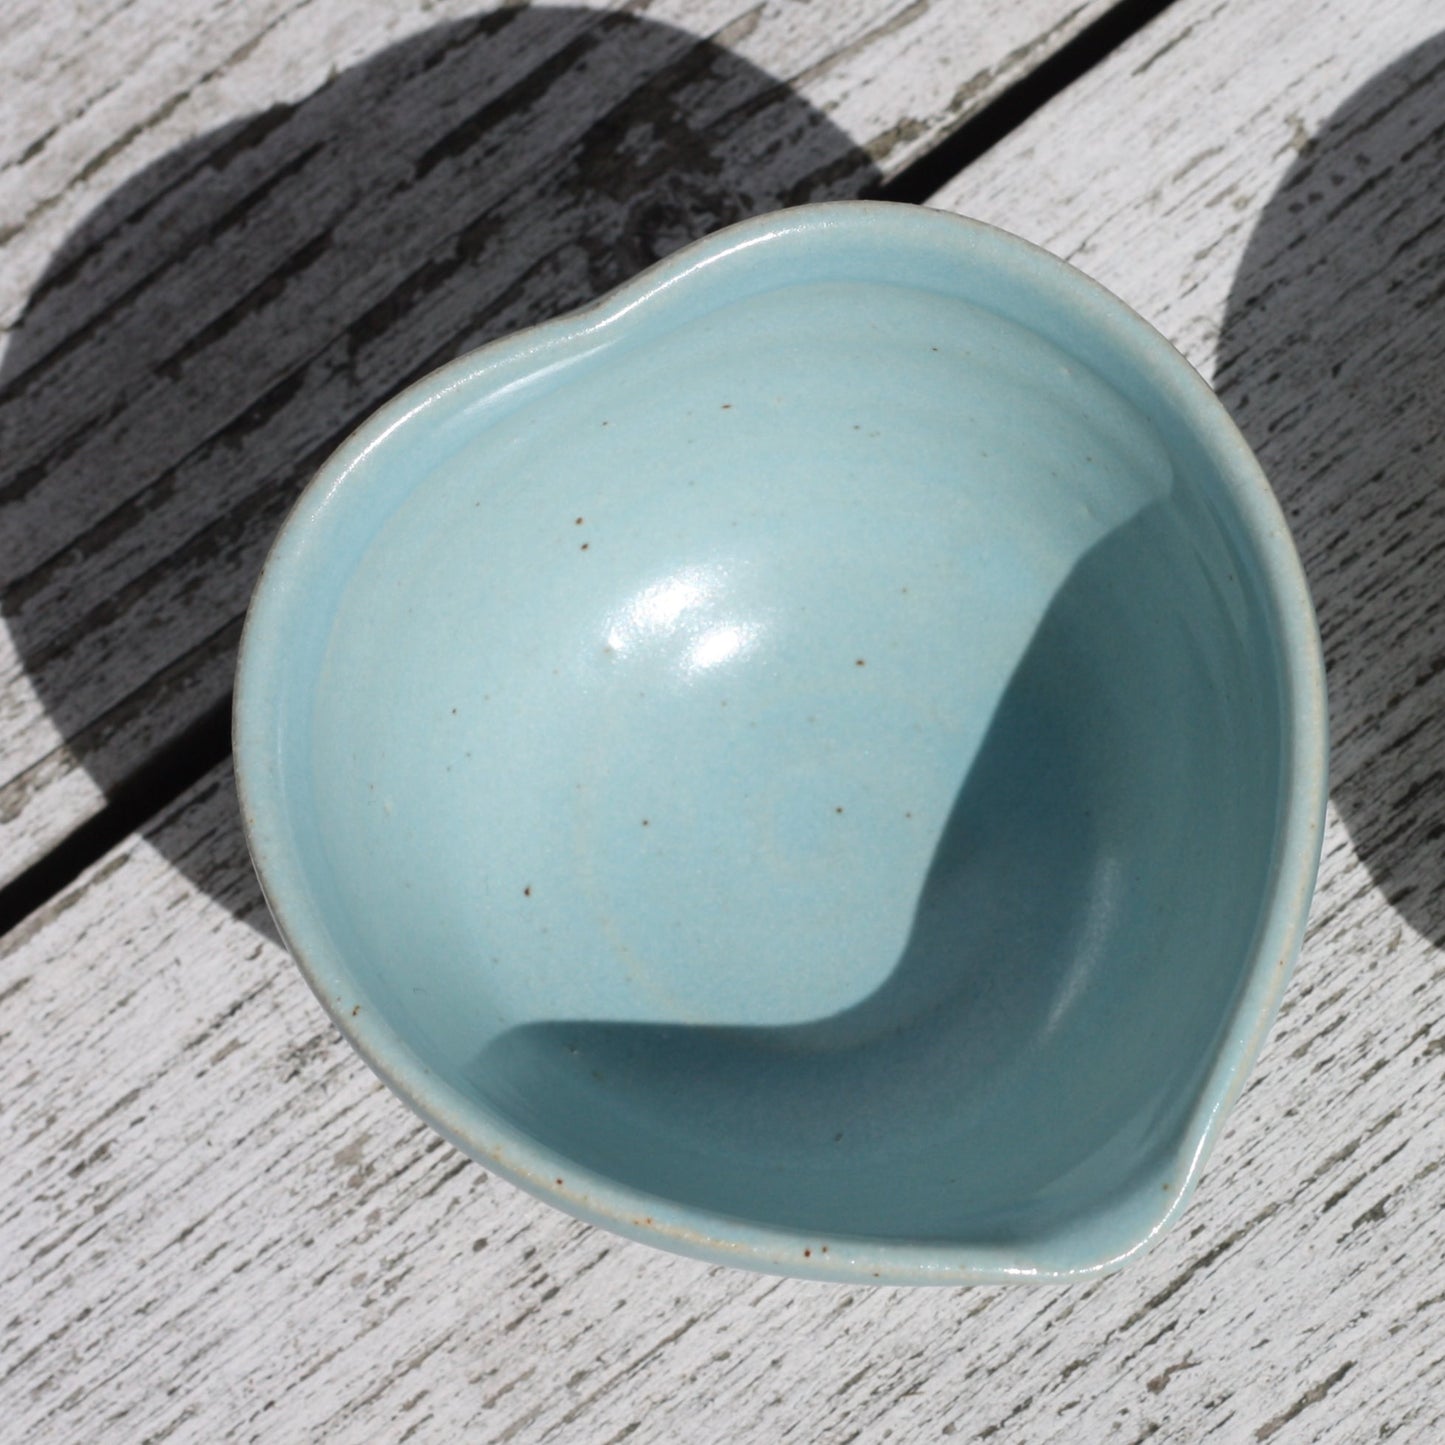 Heart Dish Small Blue or White Stoneware  ..Wheel thrown pot